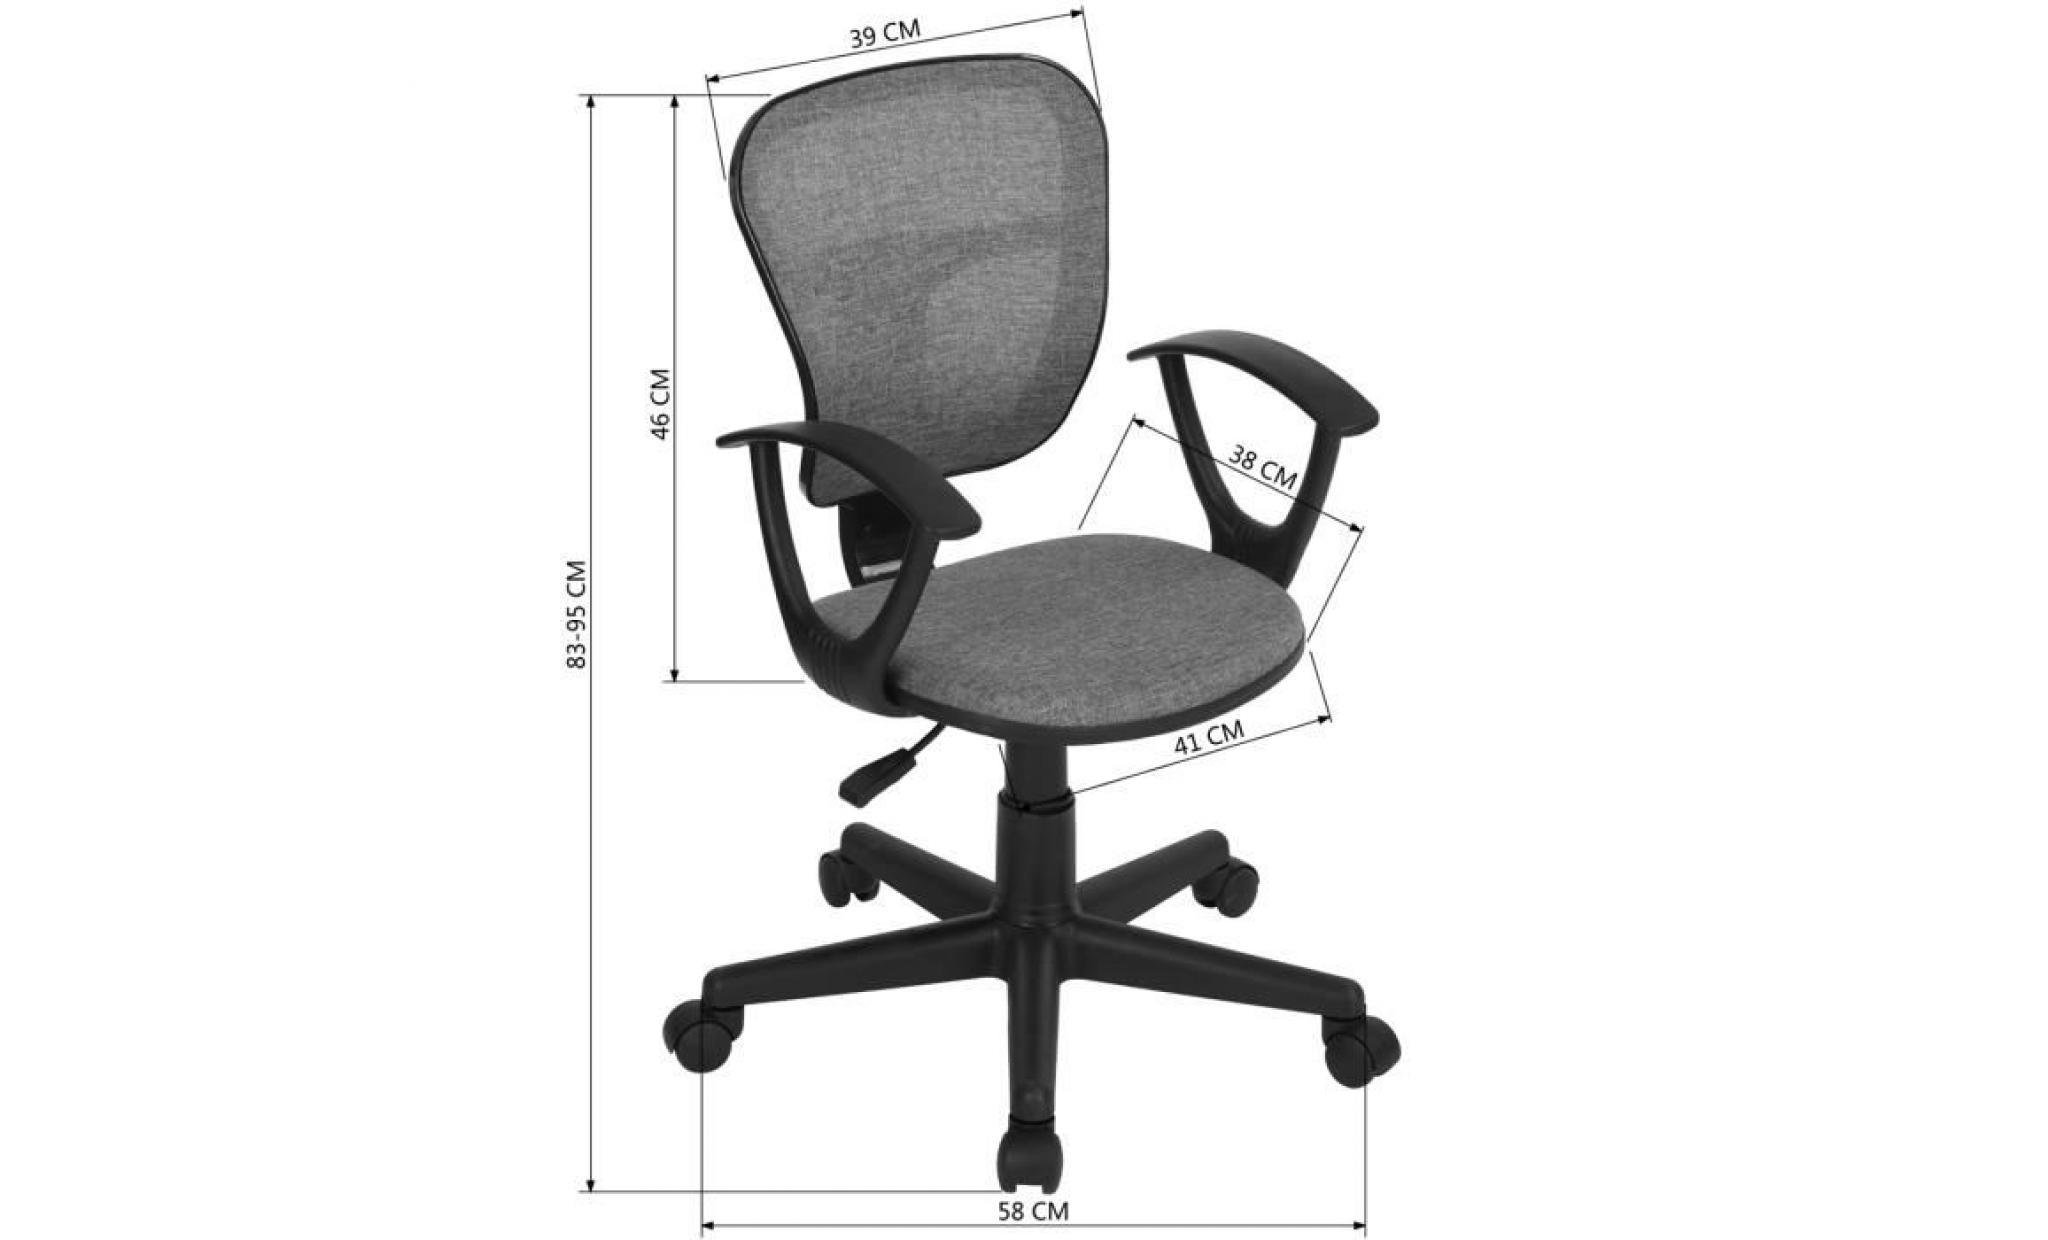 fauteuil de bureau siège réglable mobile roulant roulettes tissu plastique accoudoirs gris noir étudiant enfant pas cher